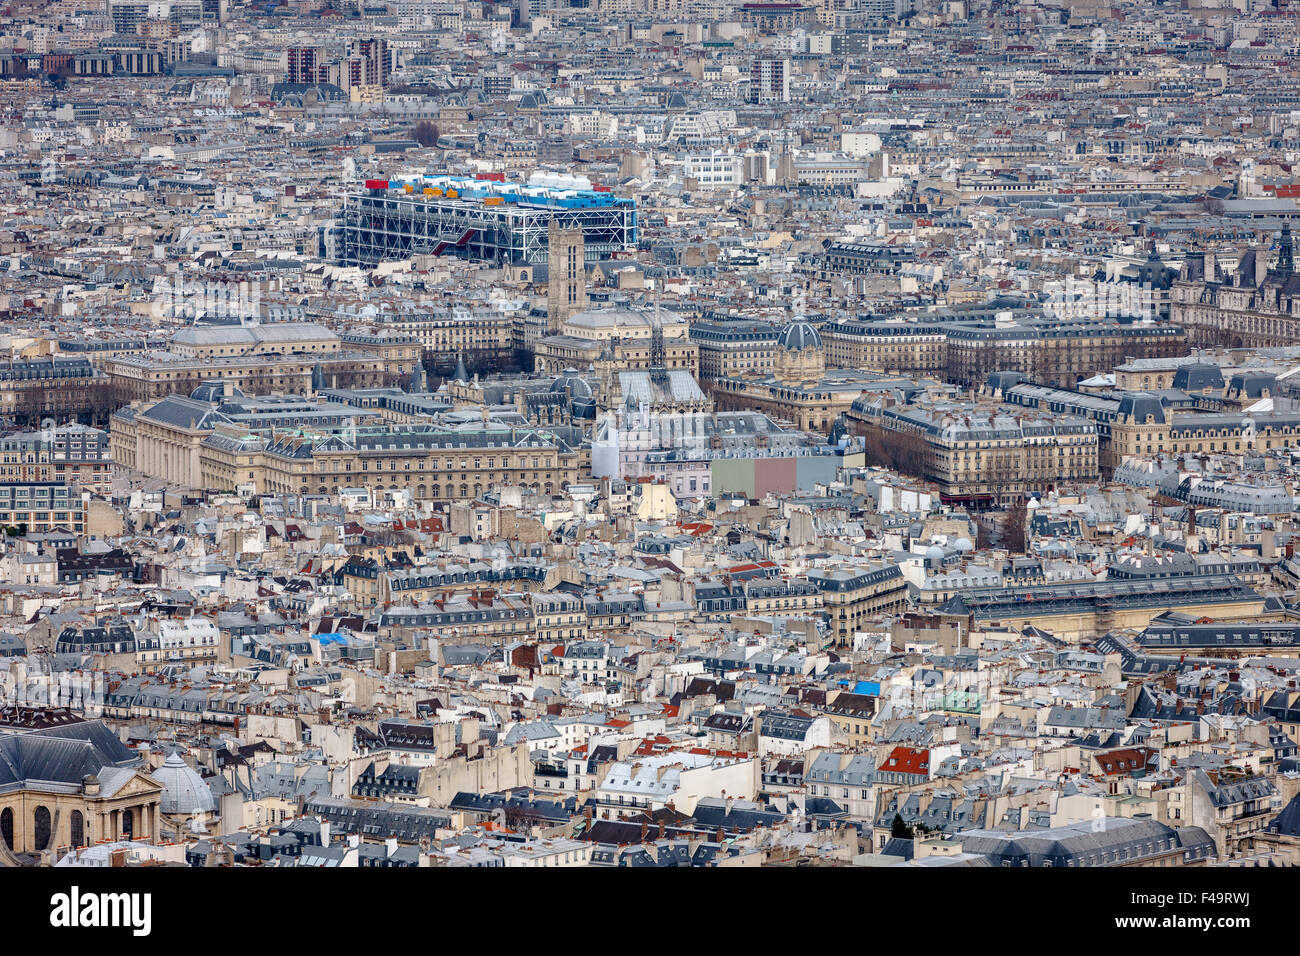 Vue aérienne de Paris, toits de la 4ème arrondissement de Paris, l'Ile de la Cité, Tour Saint Jacques et le Centre Georges Pompidou, France Banque D'Images